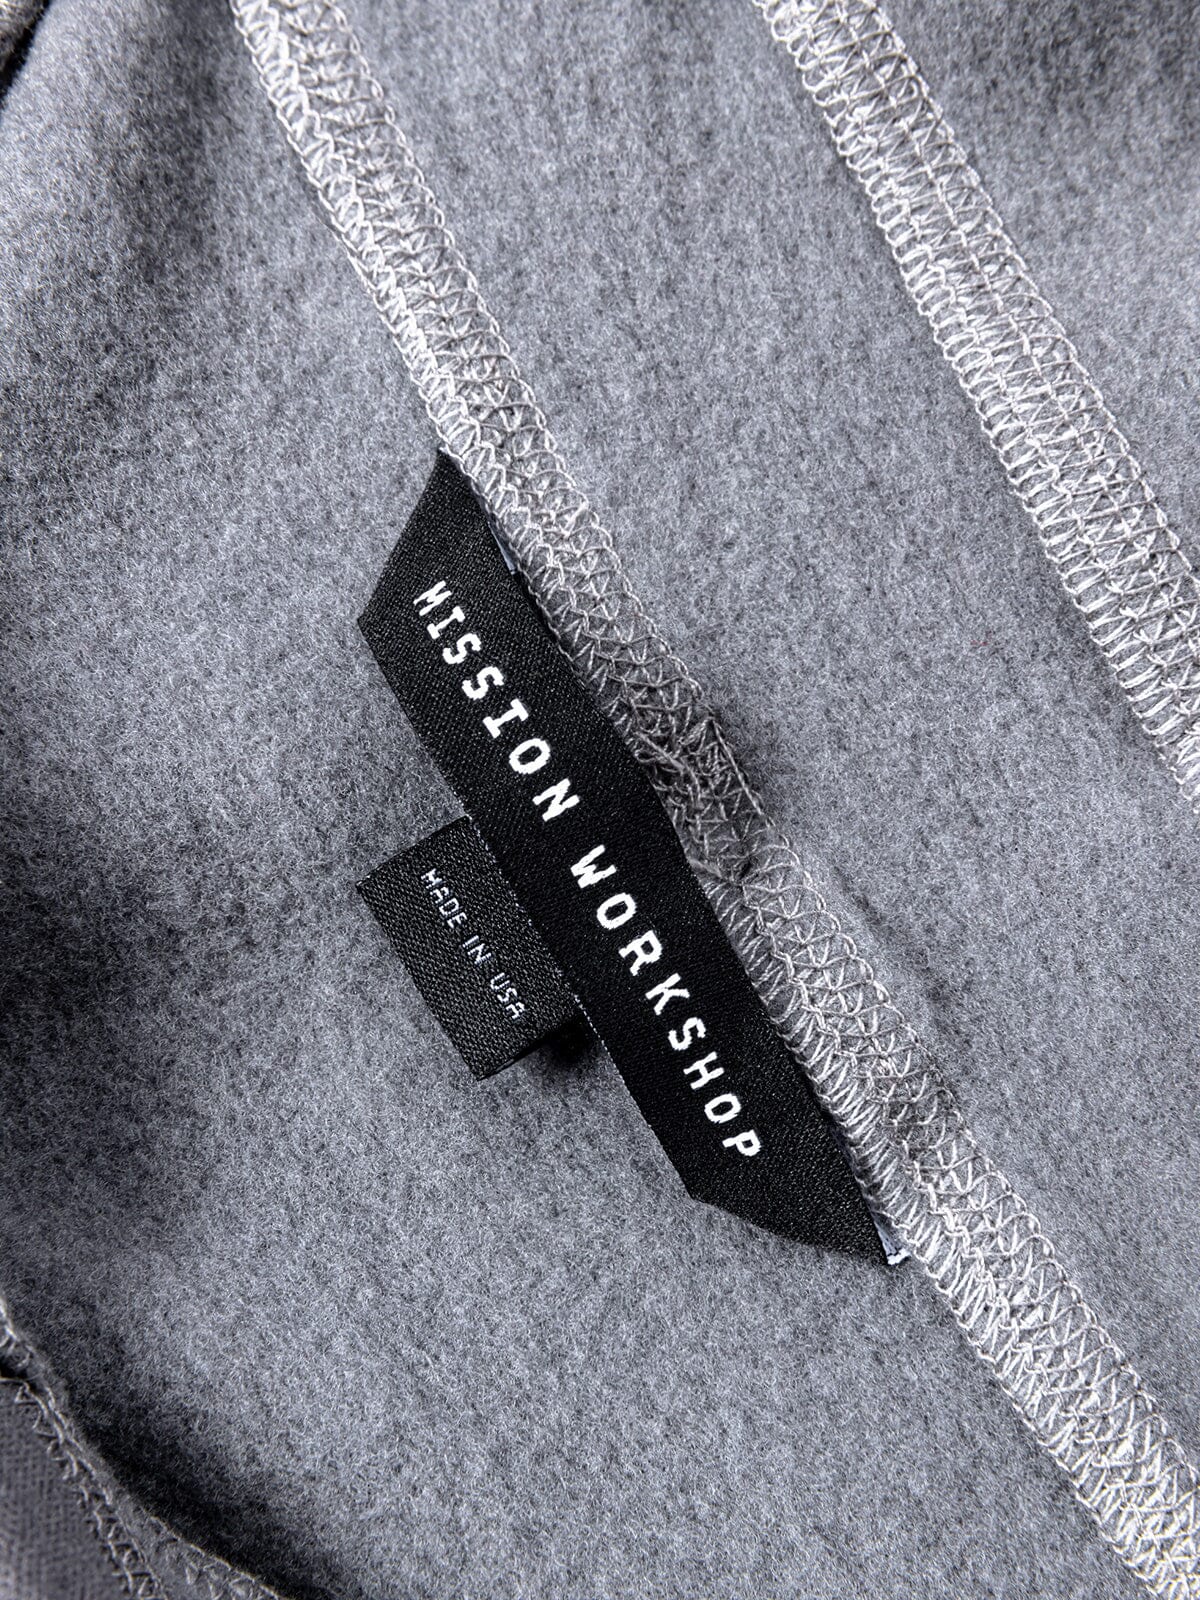 Faroe : Power Wool by Mission Workshop - Säänkestävät laukut ja tekniset vaatteet - San Francisco & Los Angeles - Rakennettu kestämään - ikuinen takuu